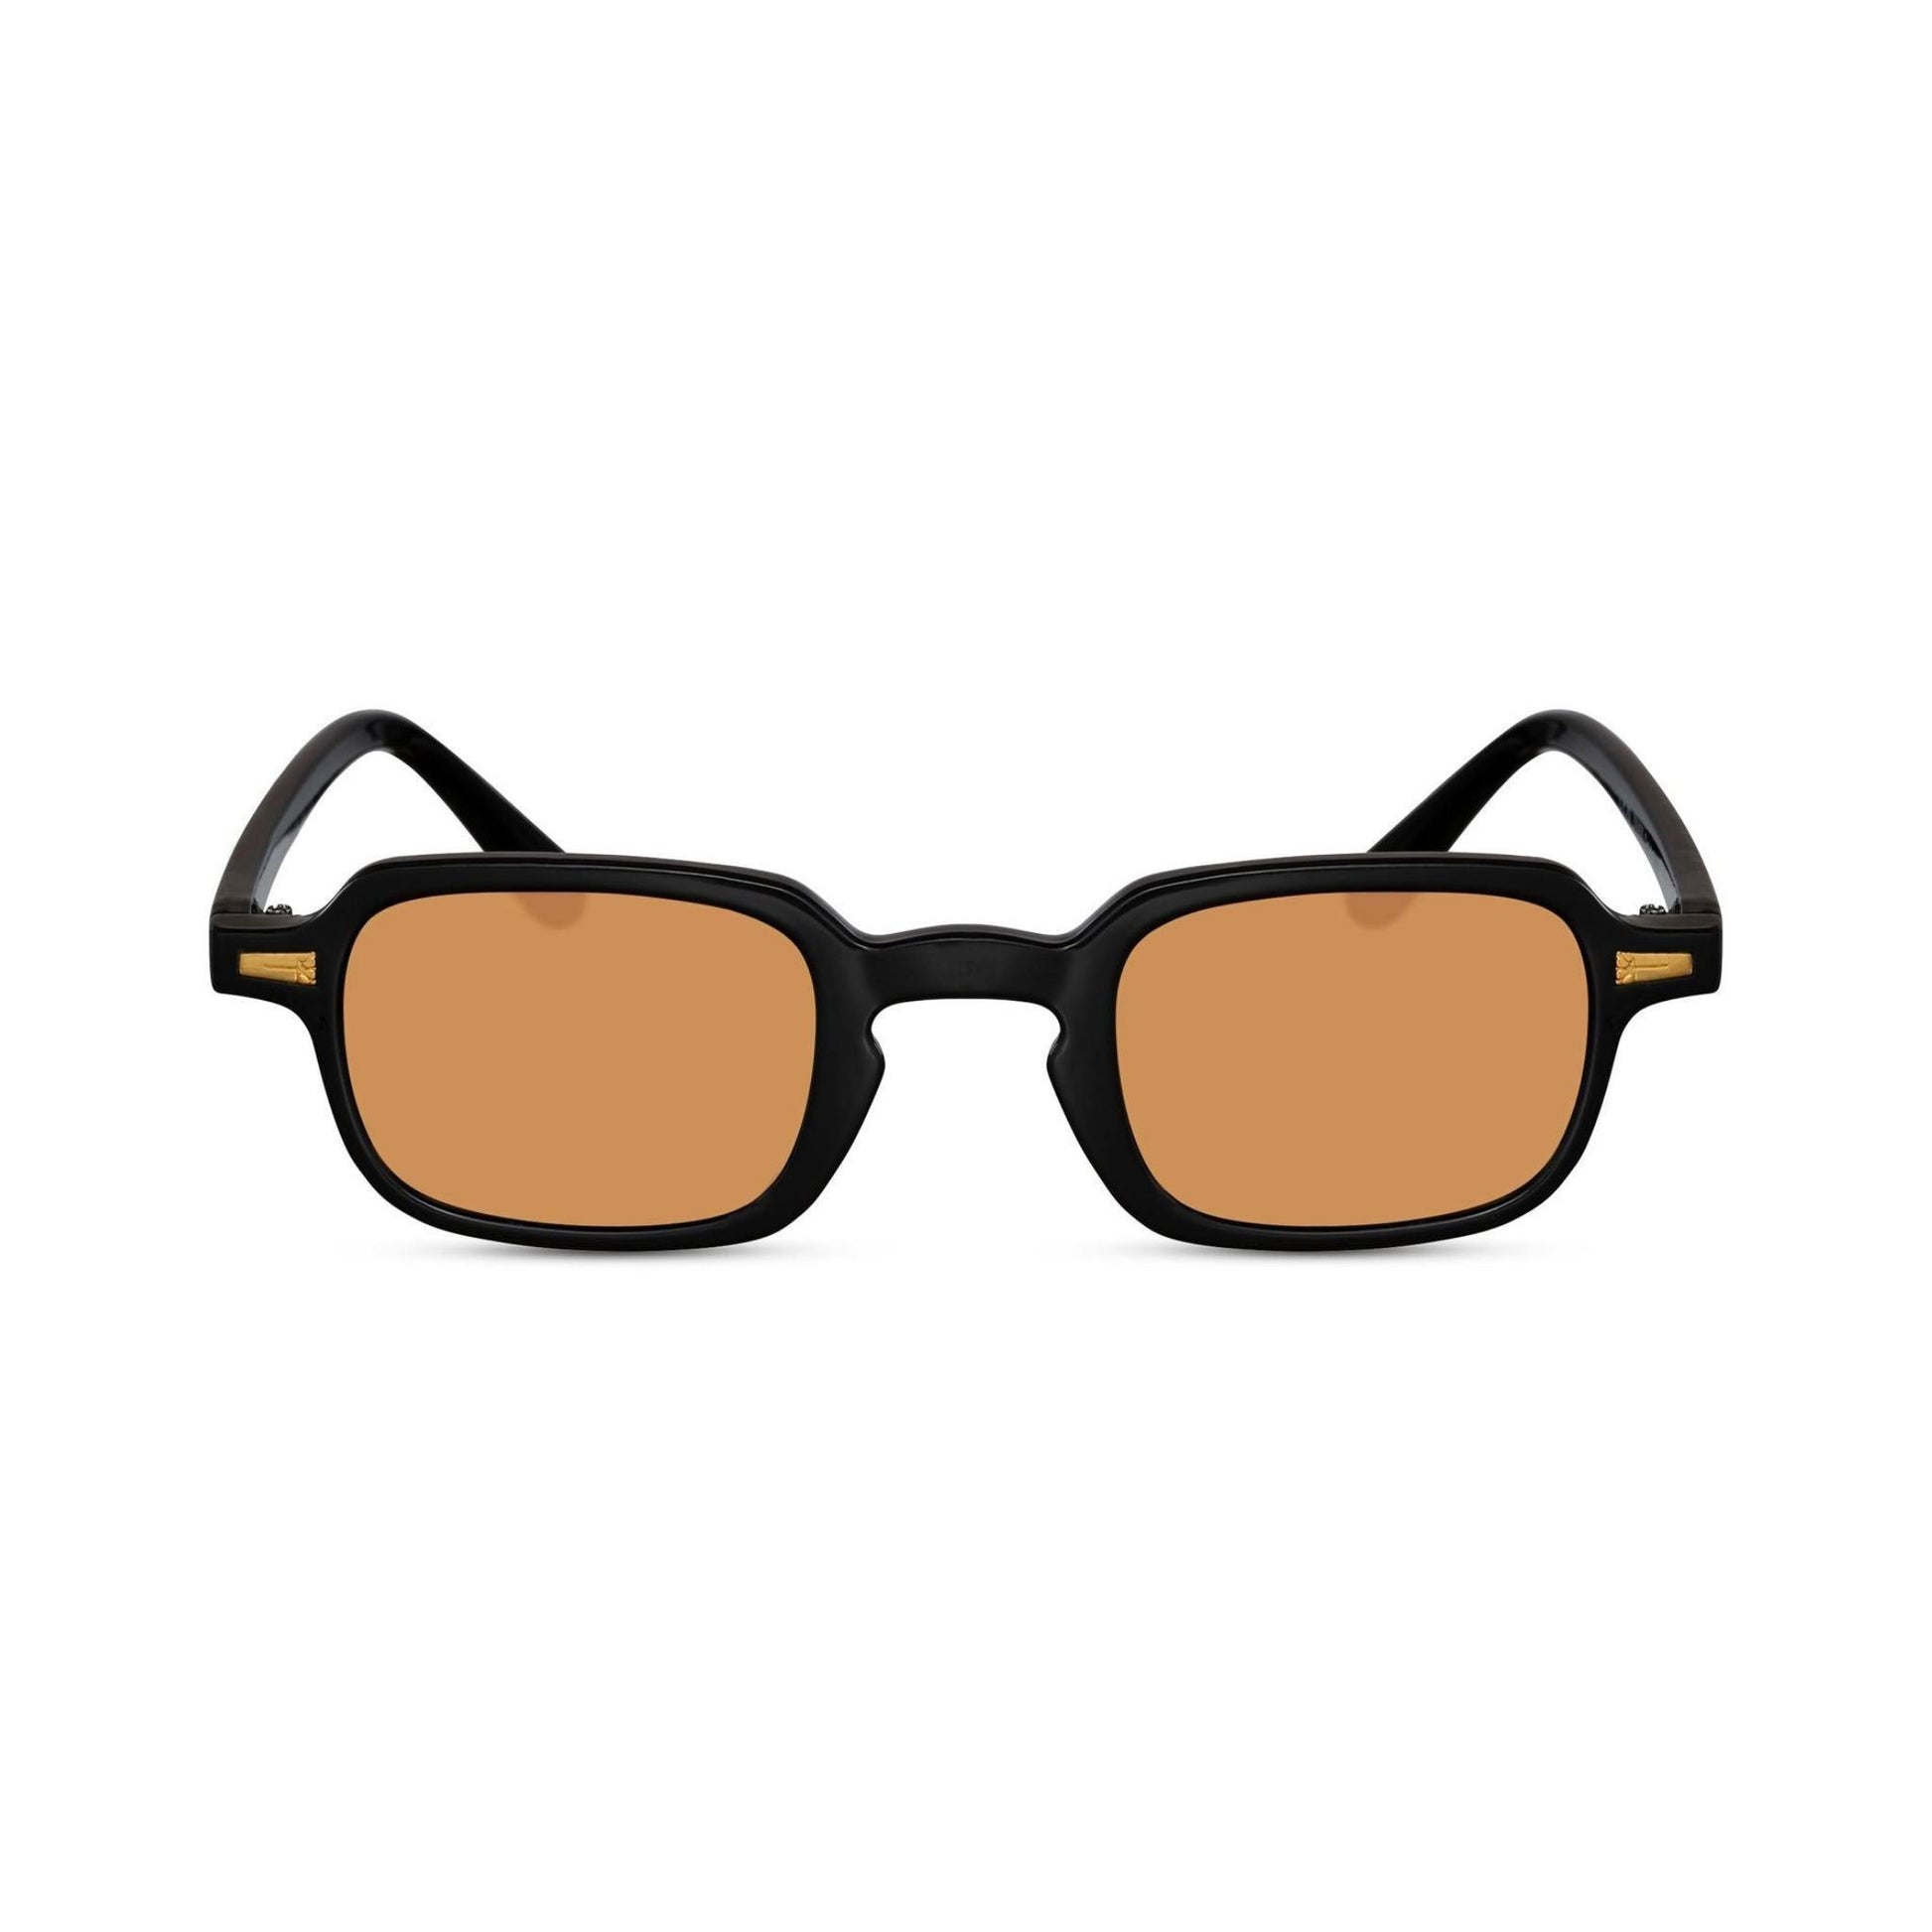 Τετράγωνα Γυαλιά Ηλίου Luminous της Exposure Sunglasses με προστασία UV400 με  μαύρο σκελετό και πορτοκαλί φακό.